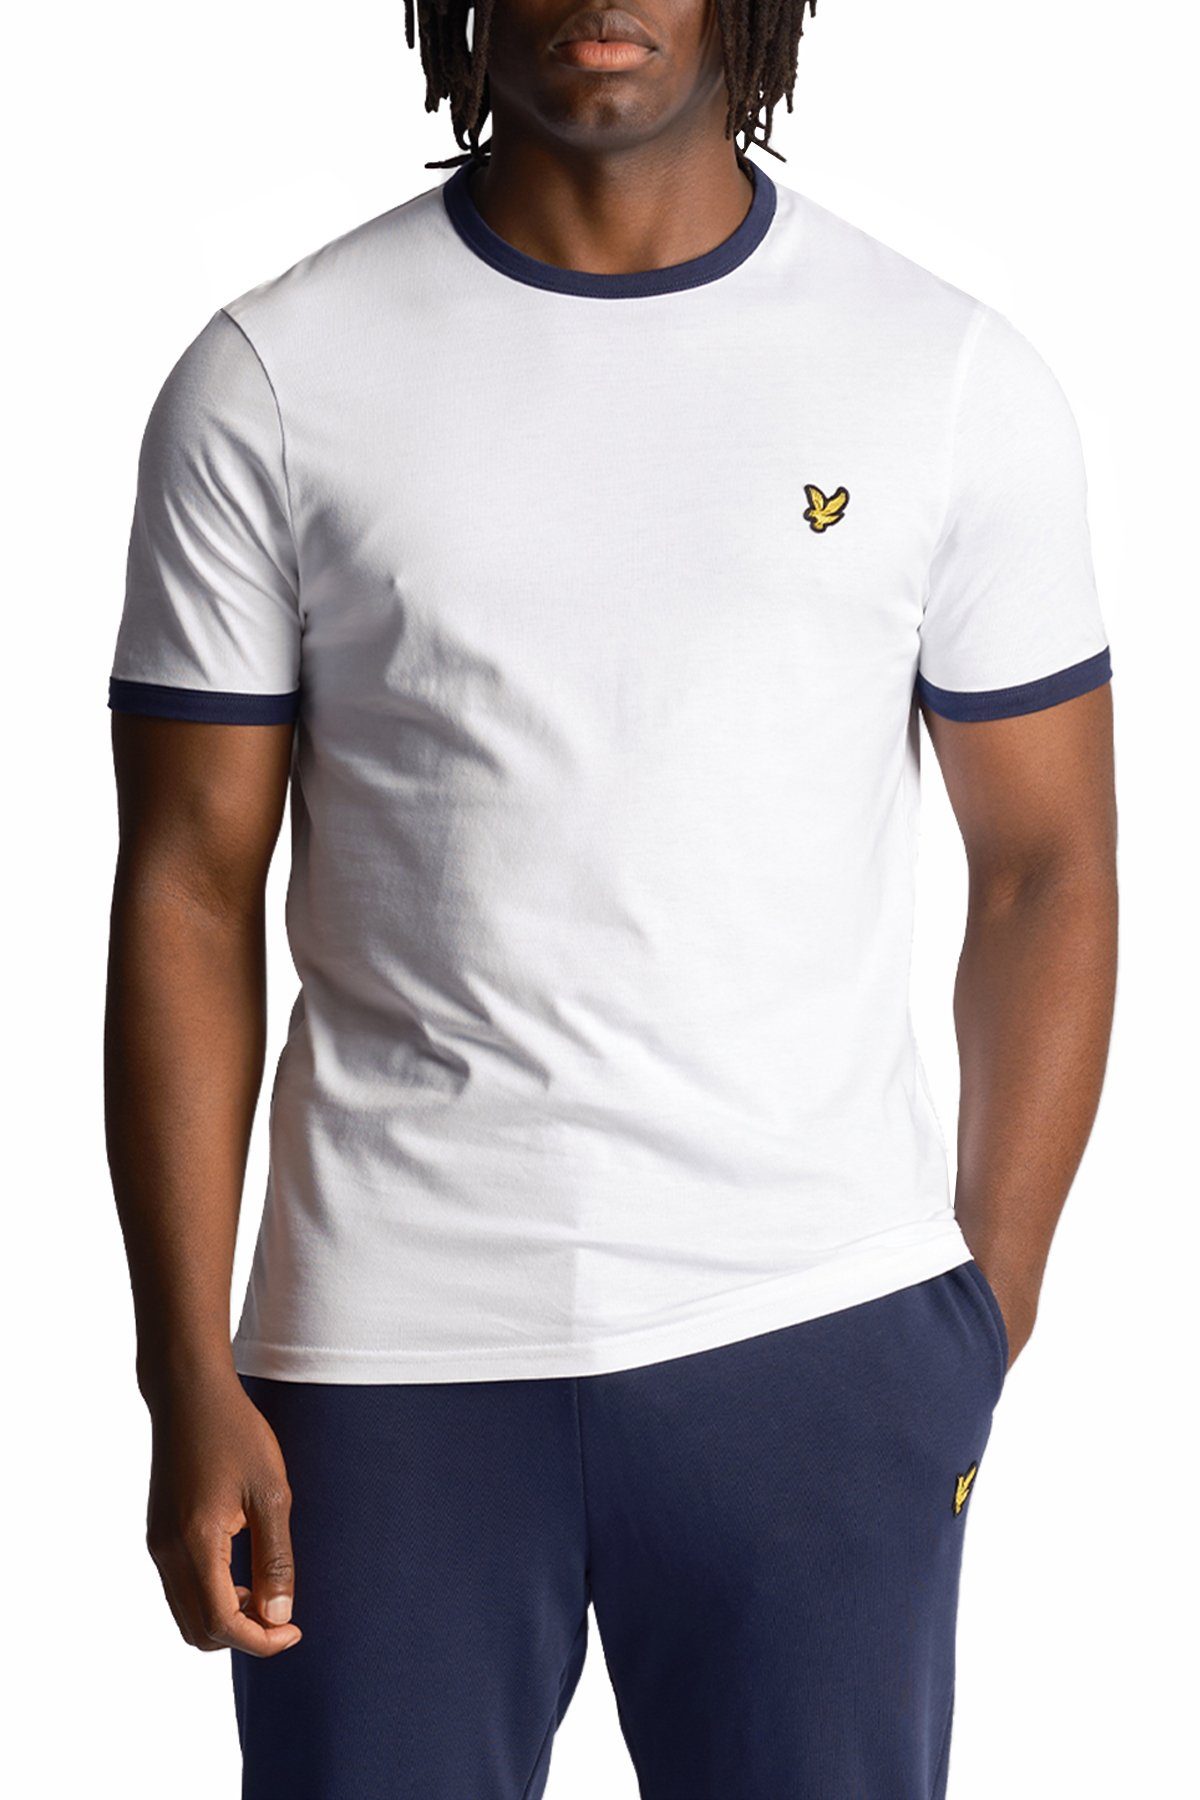 Lyle & Scott T-Shirt Weiß/Marine Kontrastierender Zierleiste Mit